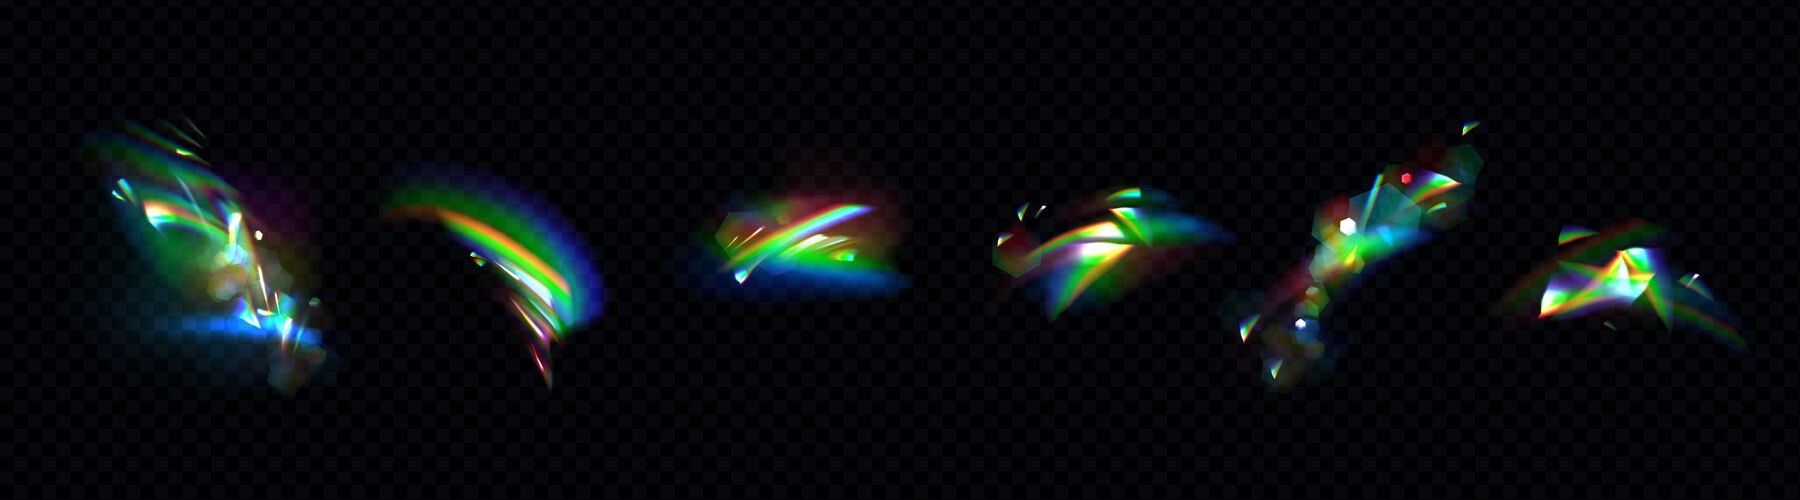 辉光水晶彩虹灯套装六边形纹理设置